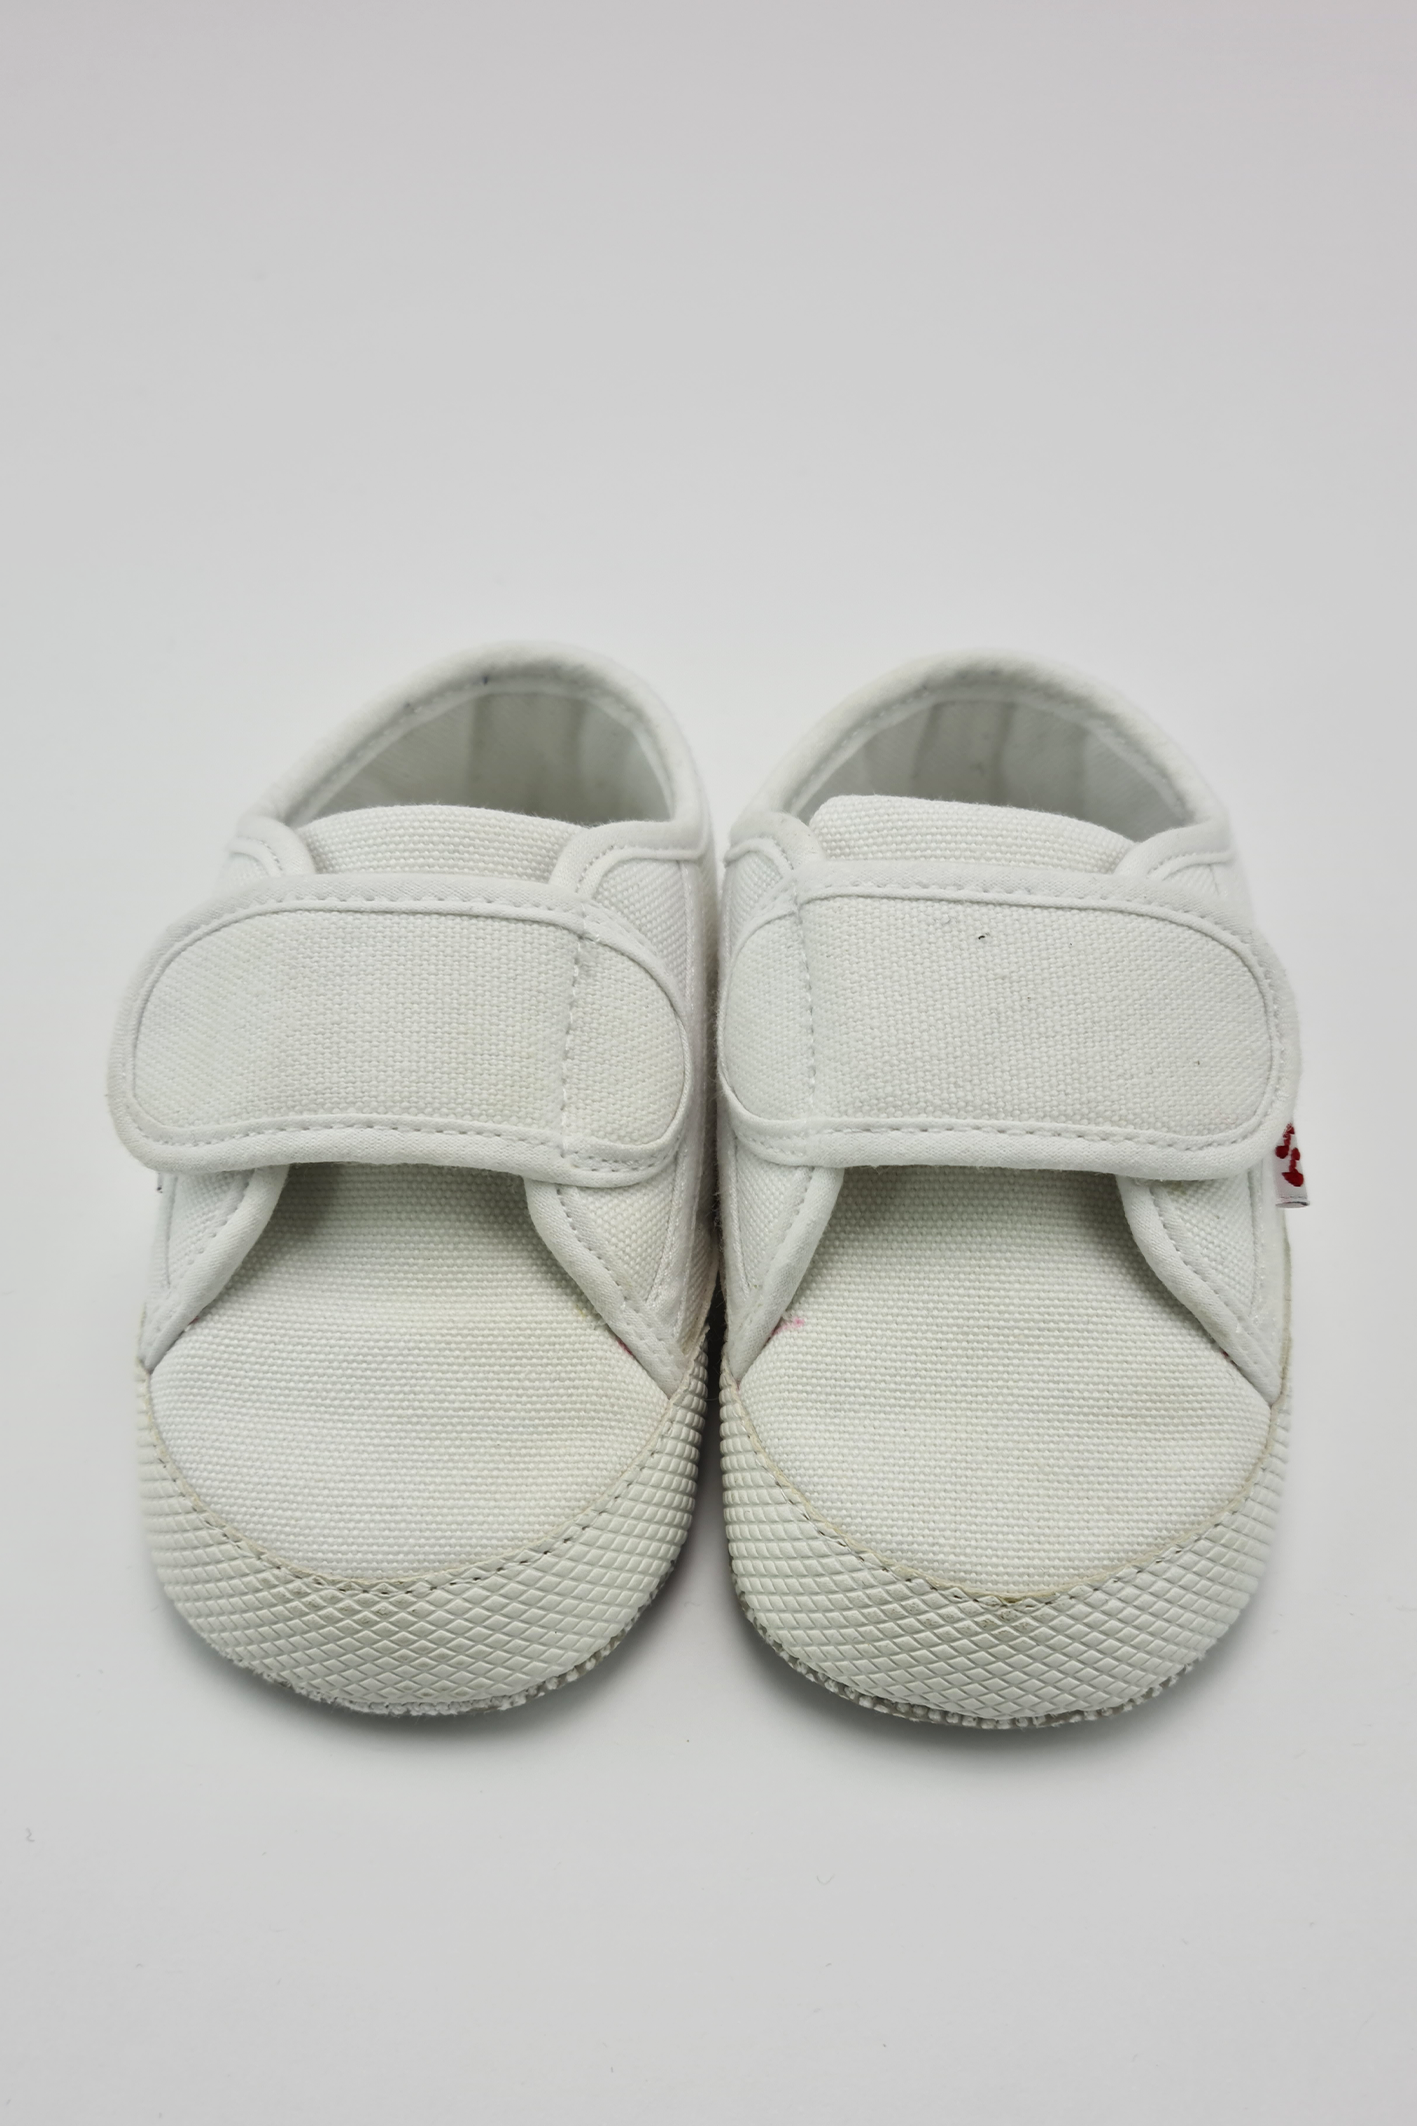 Size 4 - White Cotton Pram Shoes (Superga)